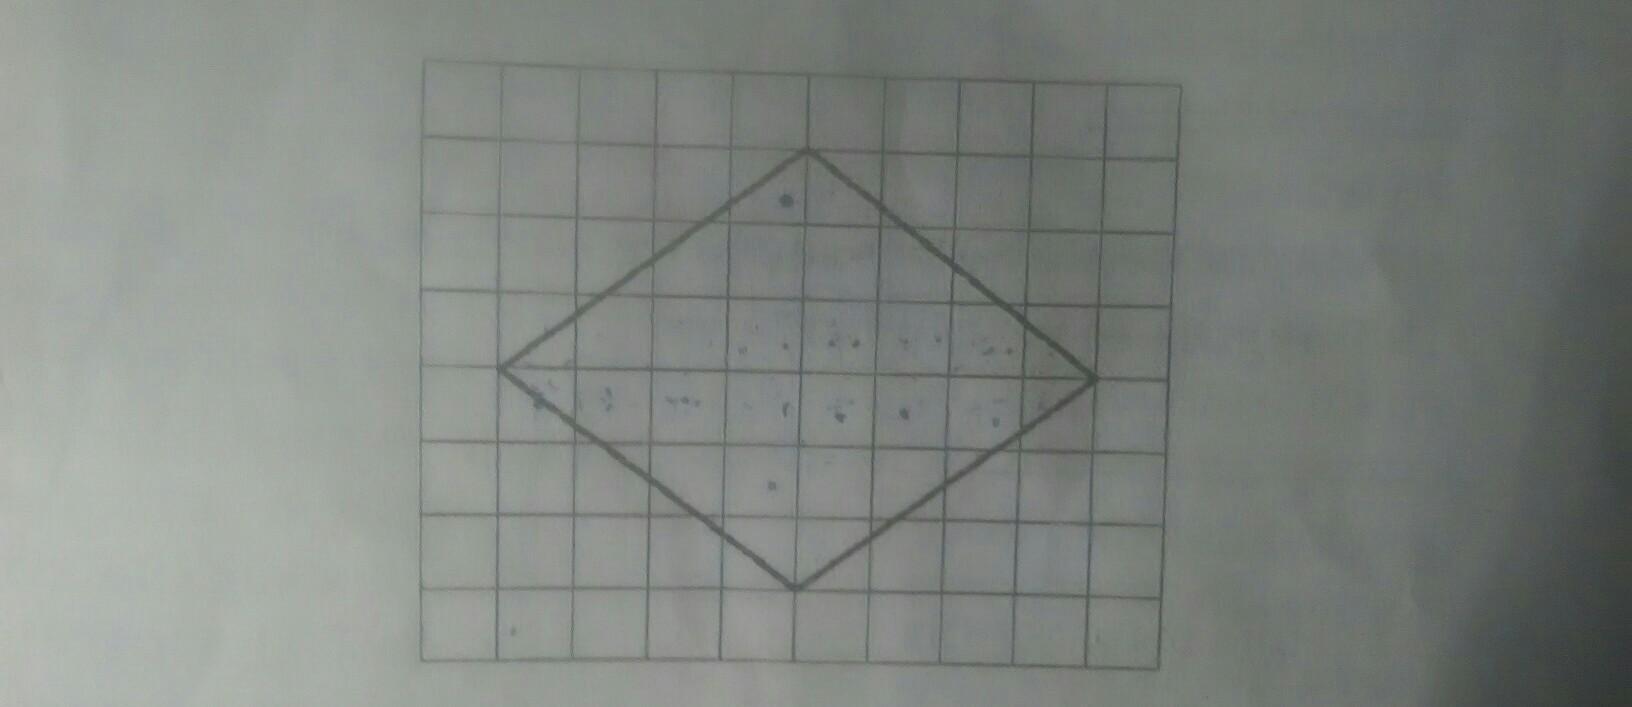 Диагональ на клетчатой бумаге. Ромб по клеткам. Найдите длину большей диагонали на клетчатой бумаге. Звезда на клетчатой бумаге. Ромб на квадратной решетке.